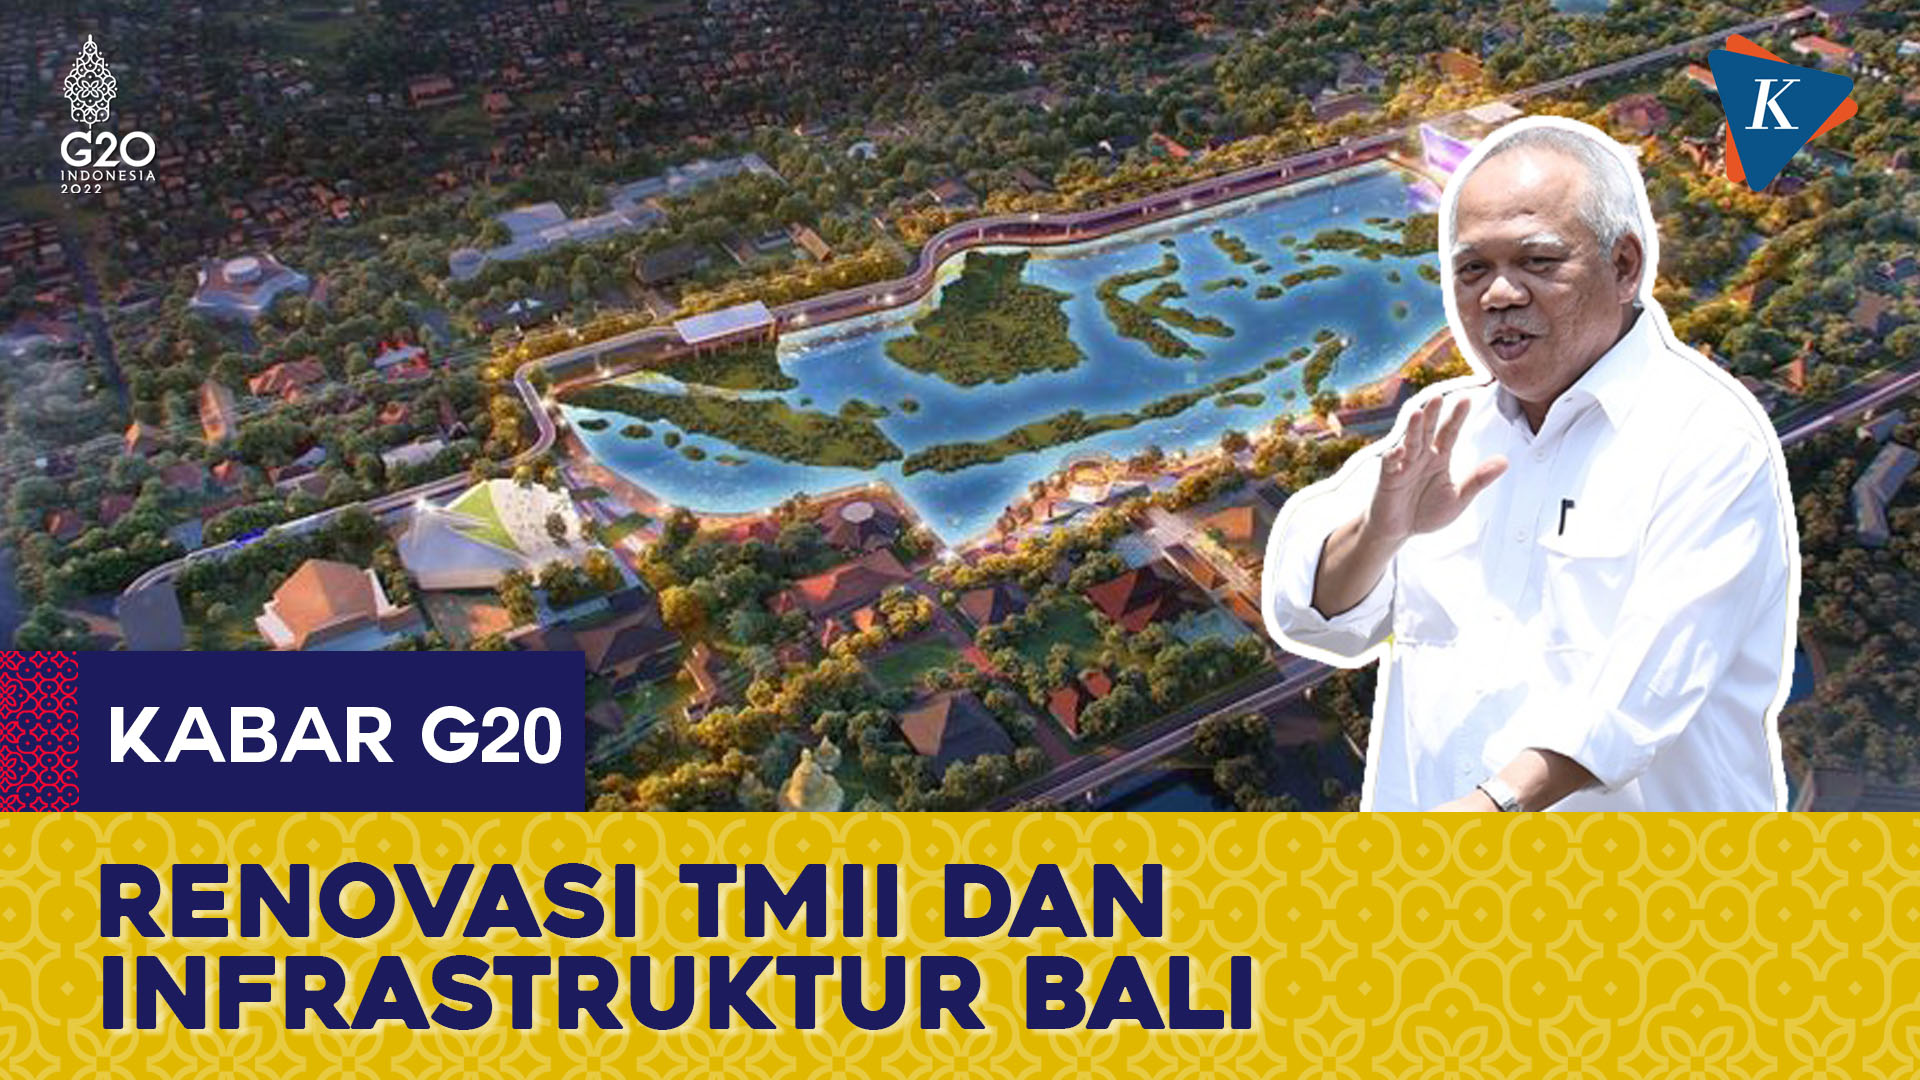 Jelang KTT G20, Pemerintah Renovasi TMII dan Tata Infrastruktur di Bali   Thumbnail: Template G20 RE